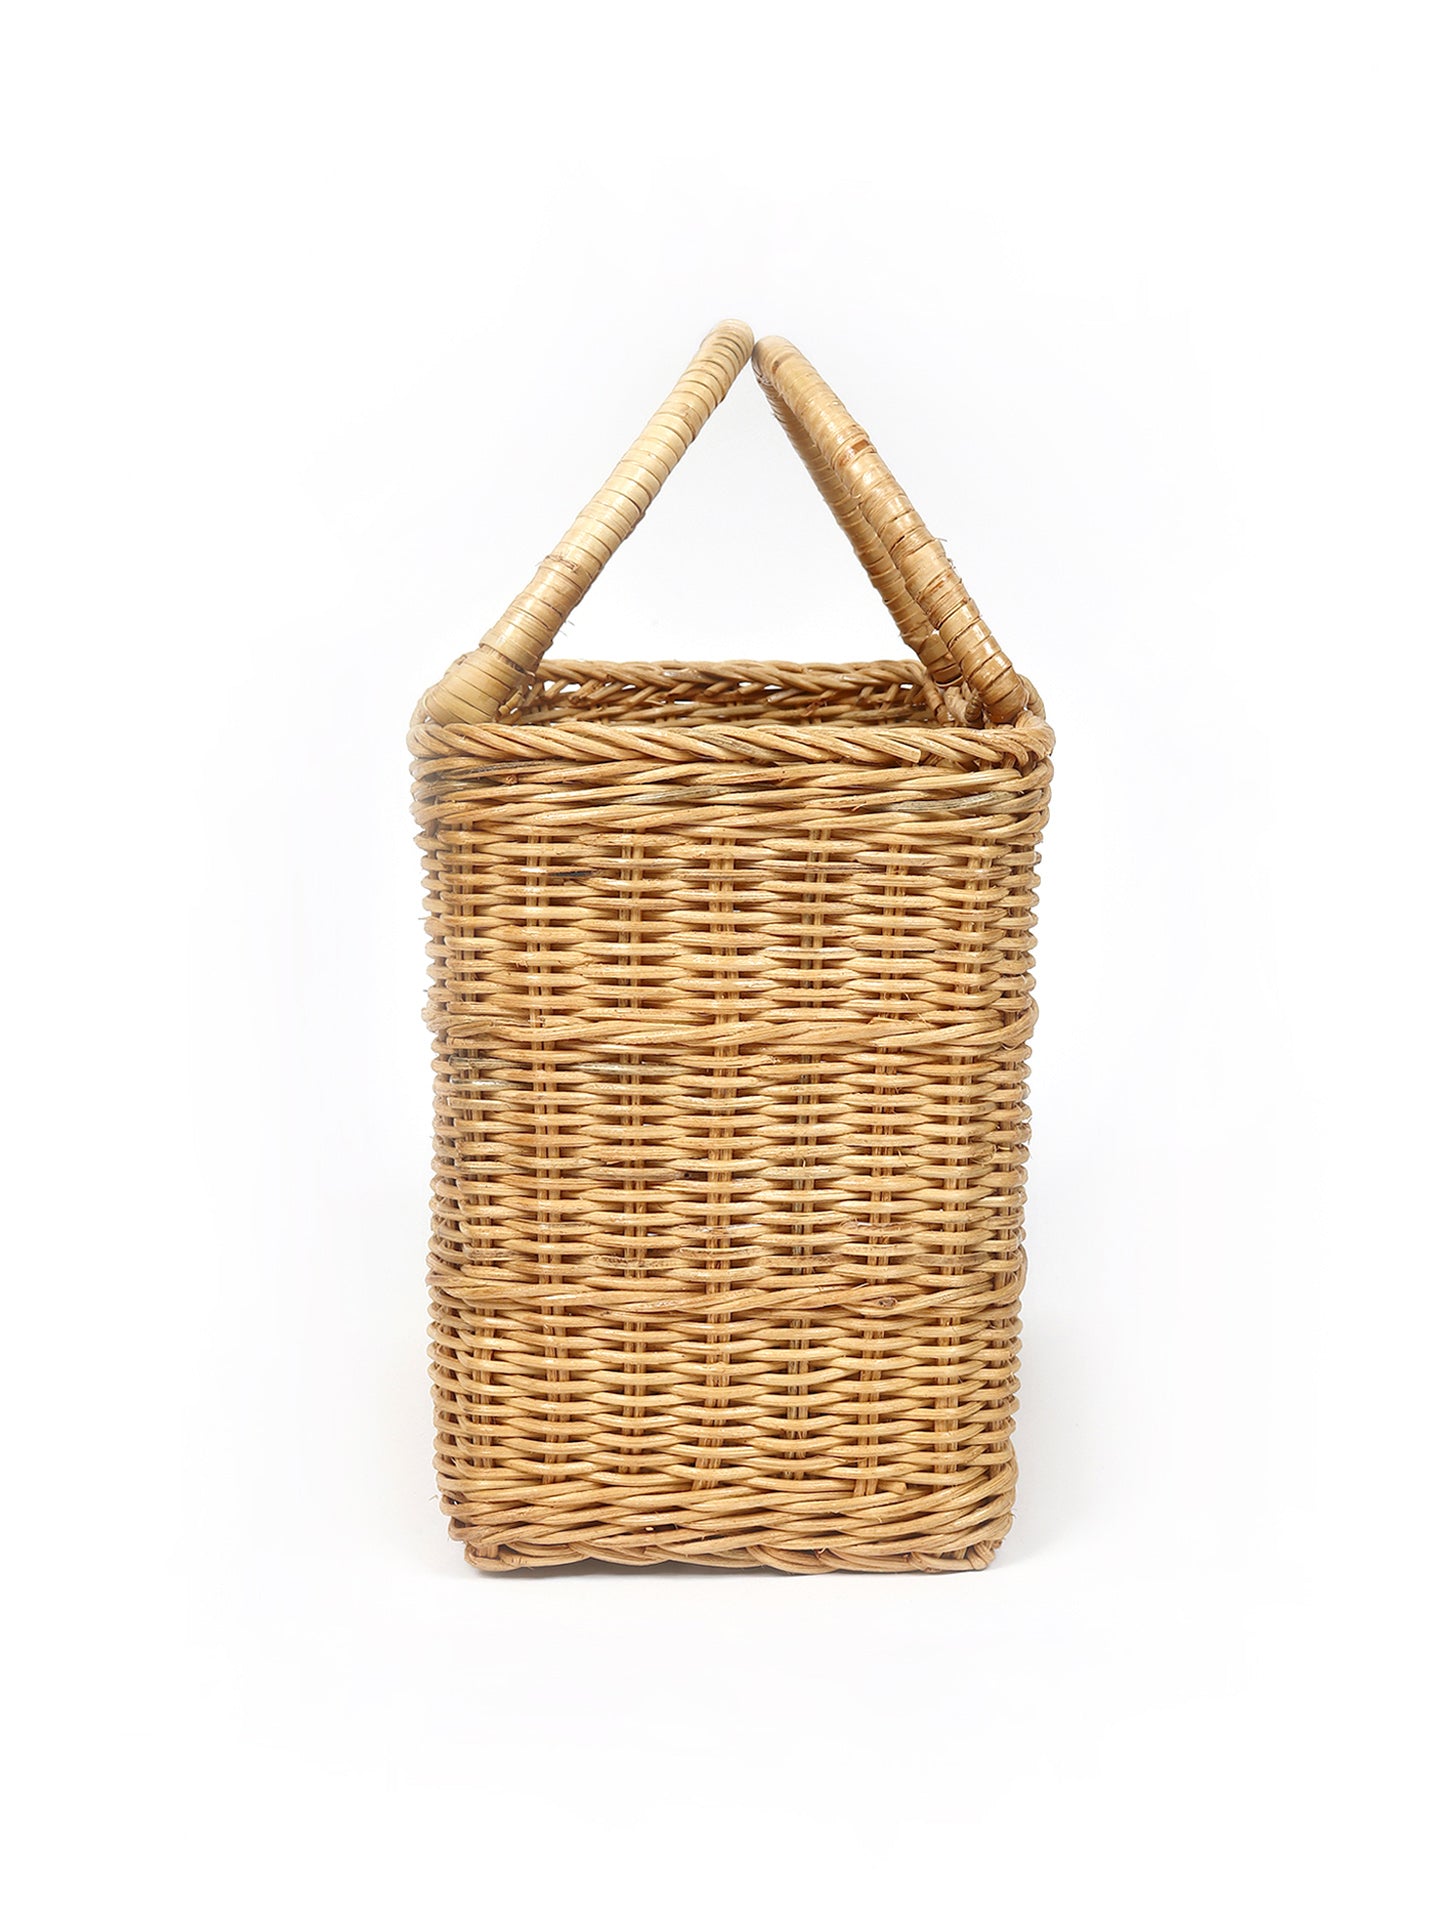  Cane Shopping Basket |